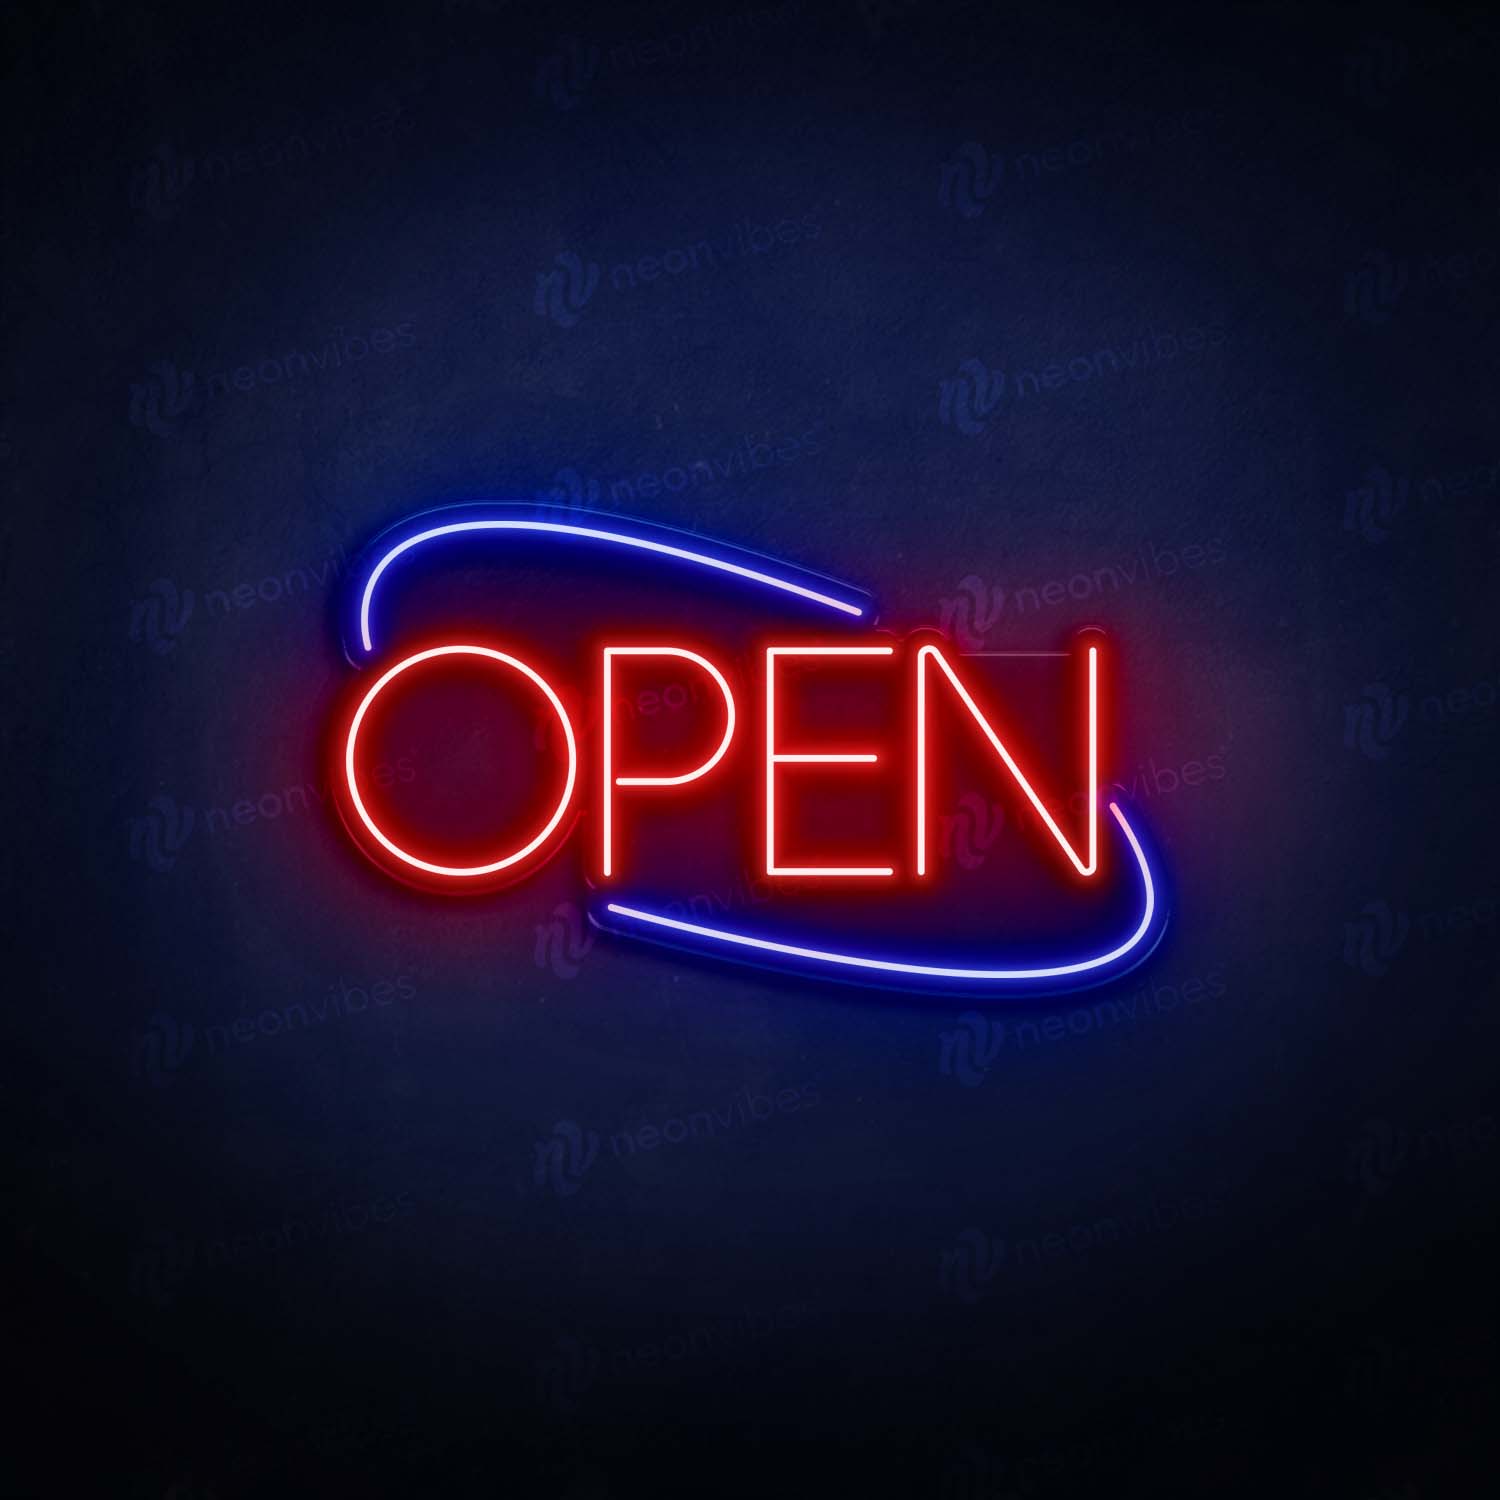 Open neon sign